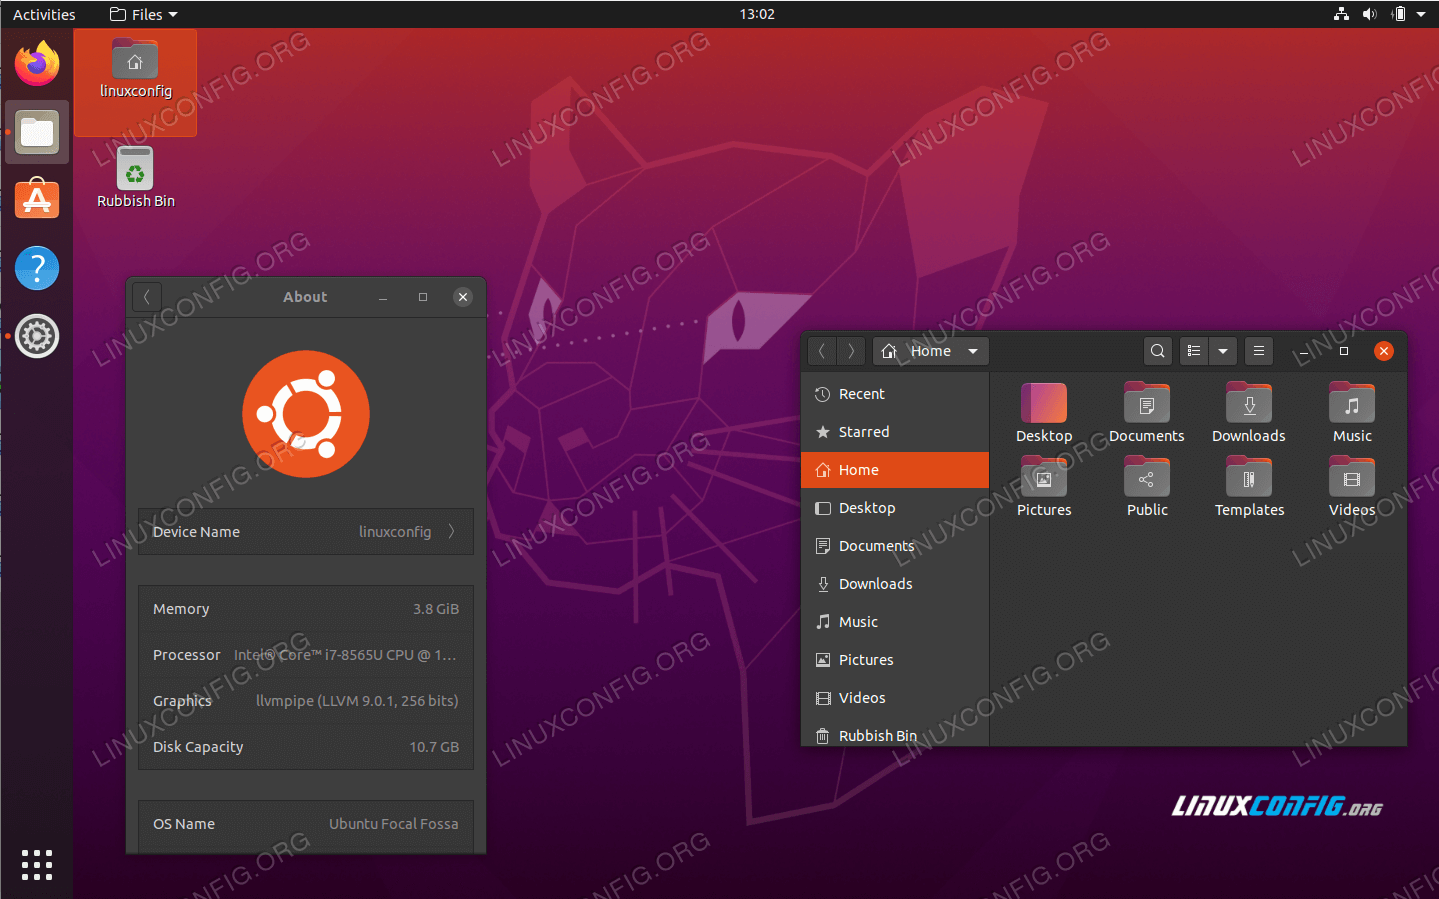 slim alla ubuntu desktop rasvapoleti ohutu